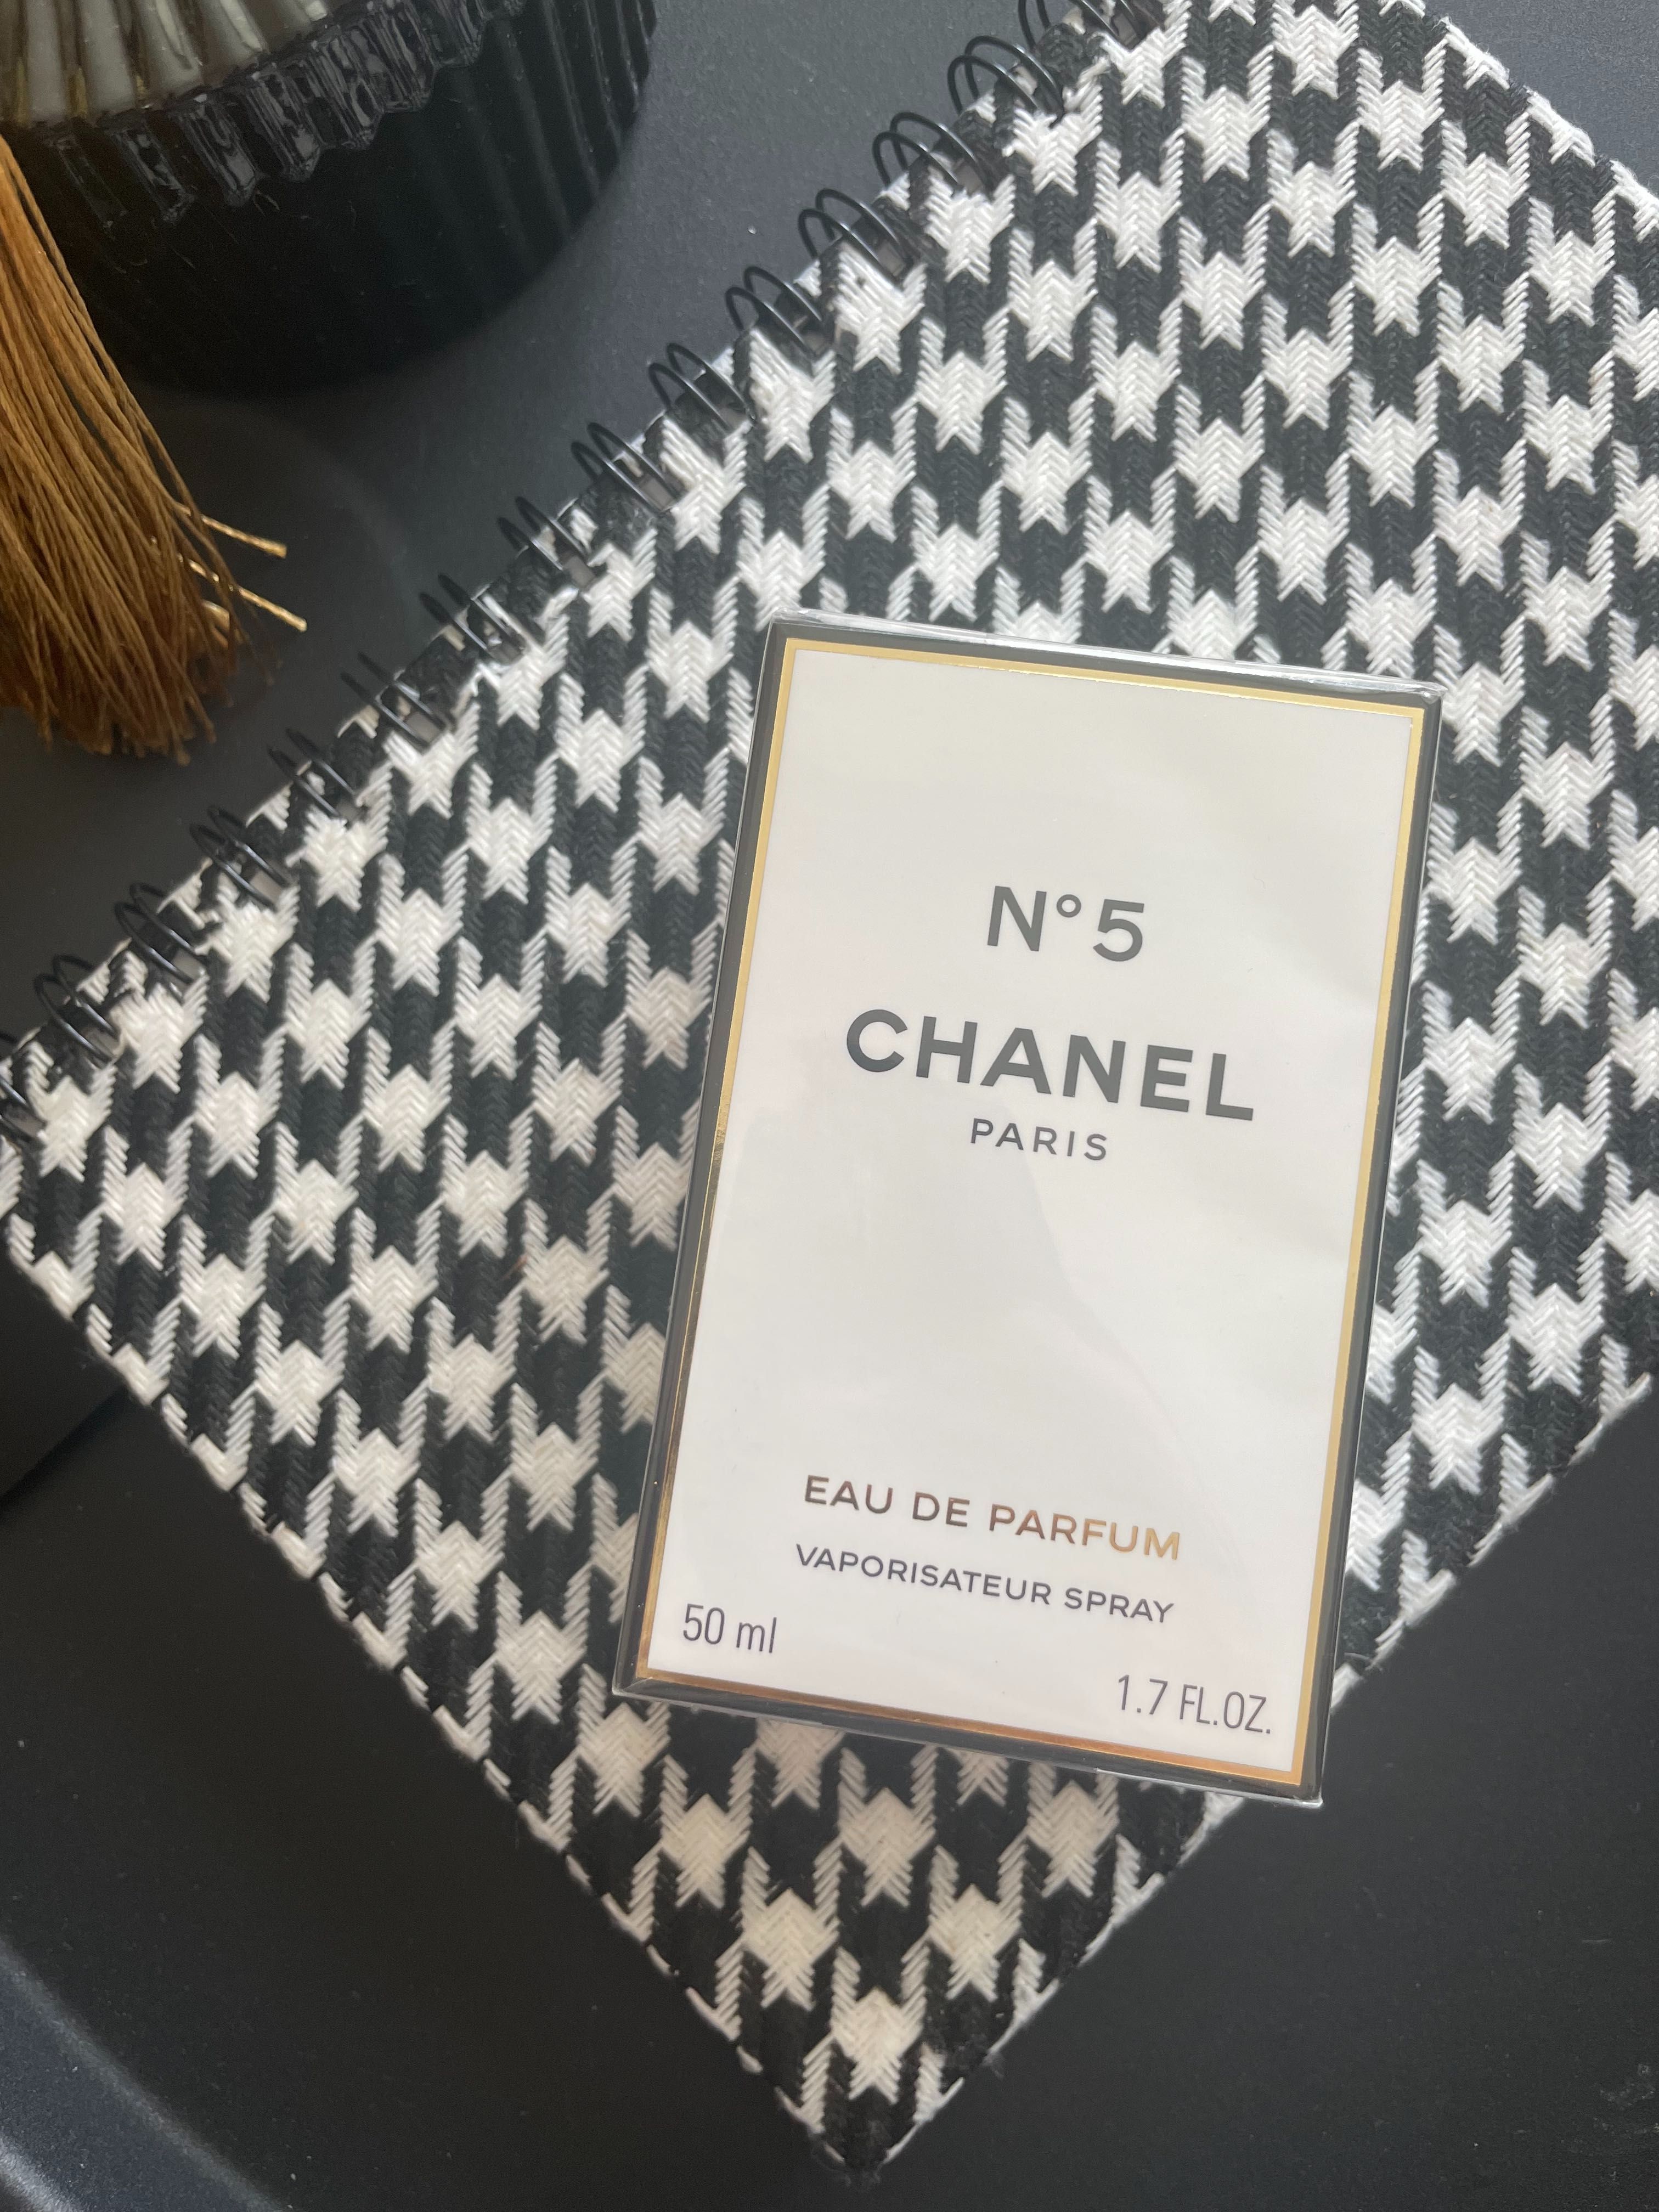 CHANEL N5 / парфюм Шанел номер 5